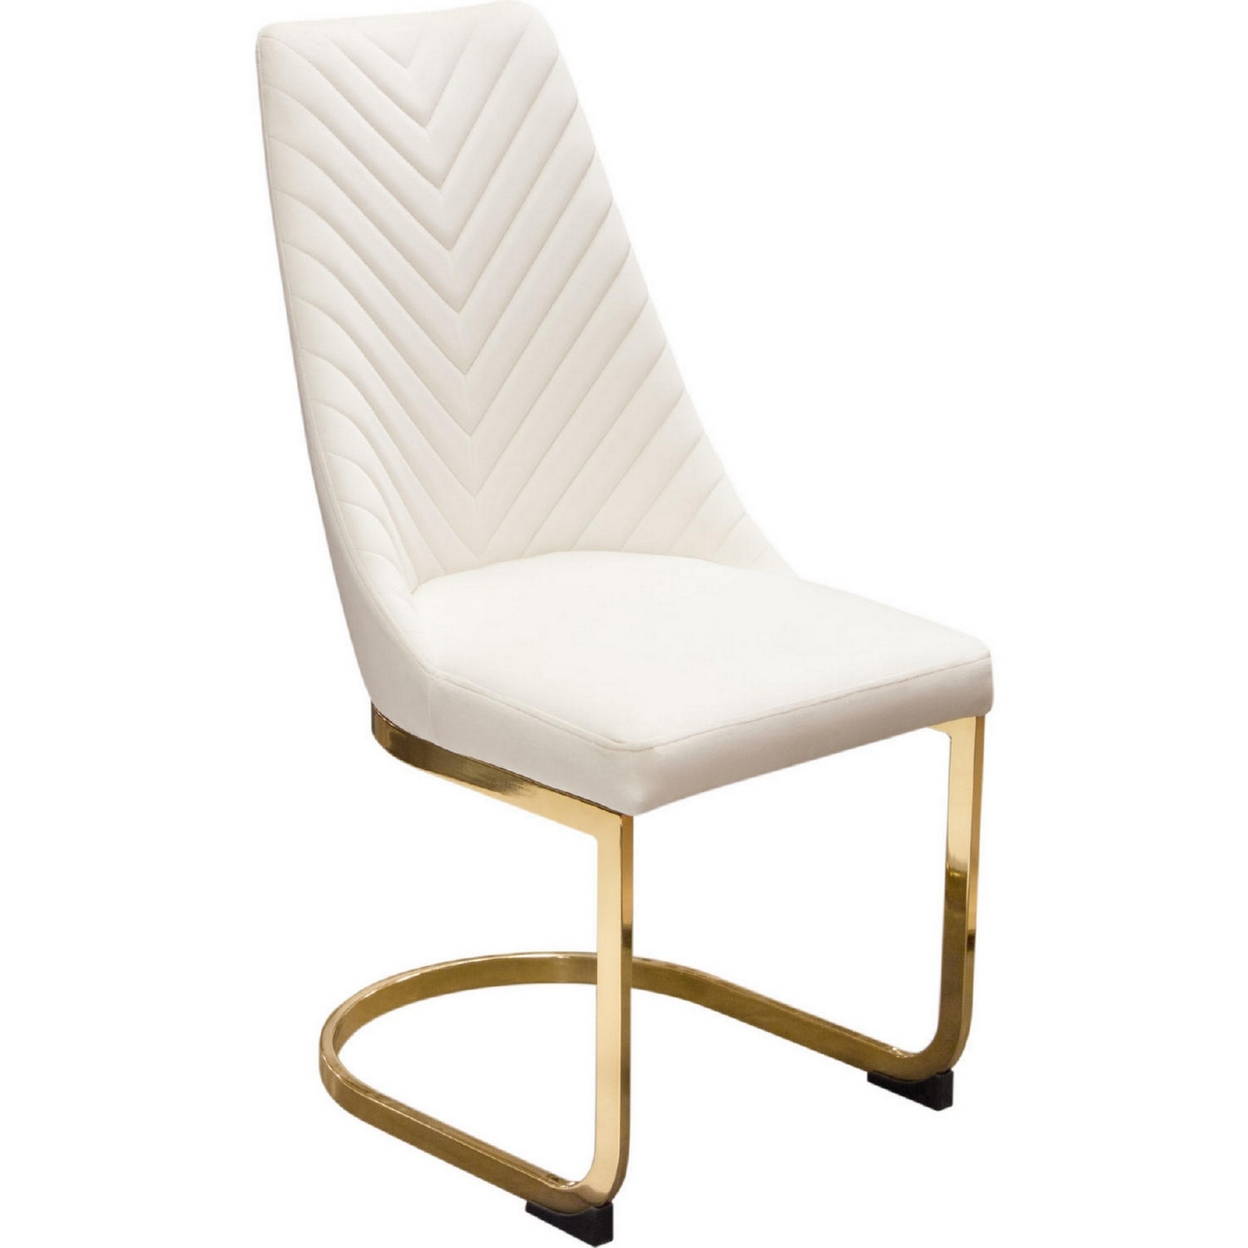 Jima 22 Inch Cantilever Dining Chair, Set Of 2, White Velvet, Gold Base- Saltoro Sherpi